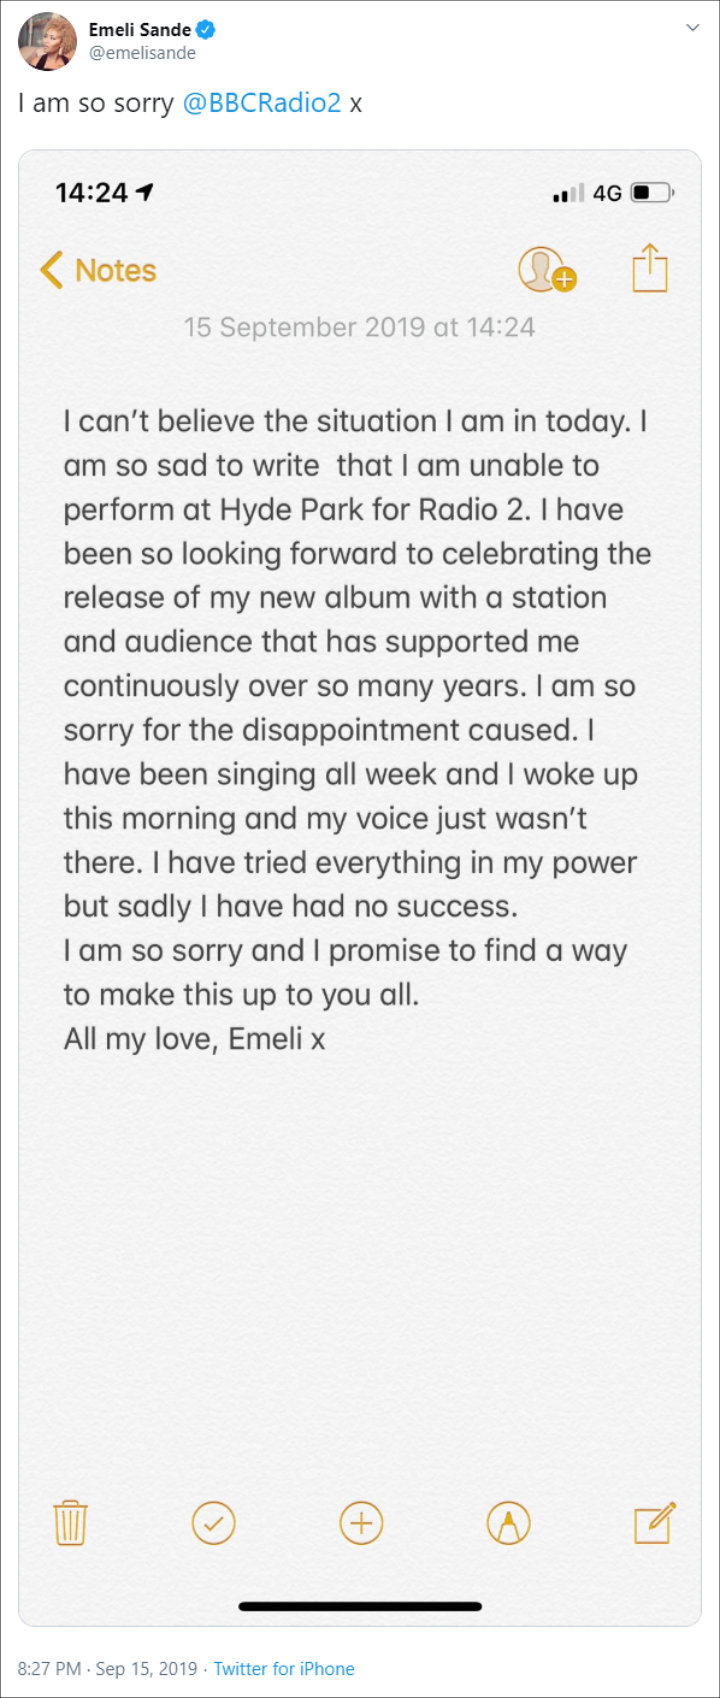 Emeli Sande apologizes to fans